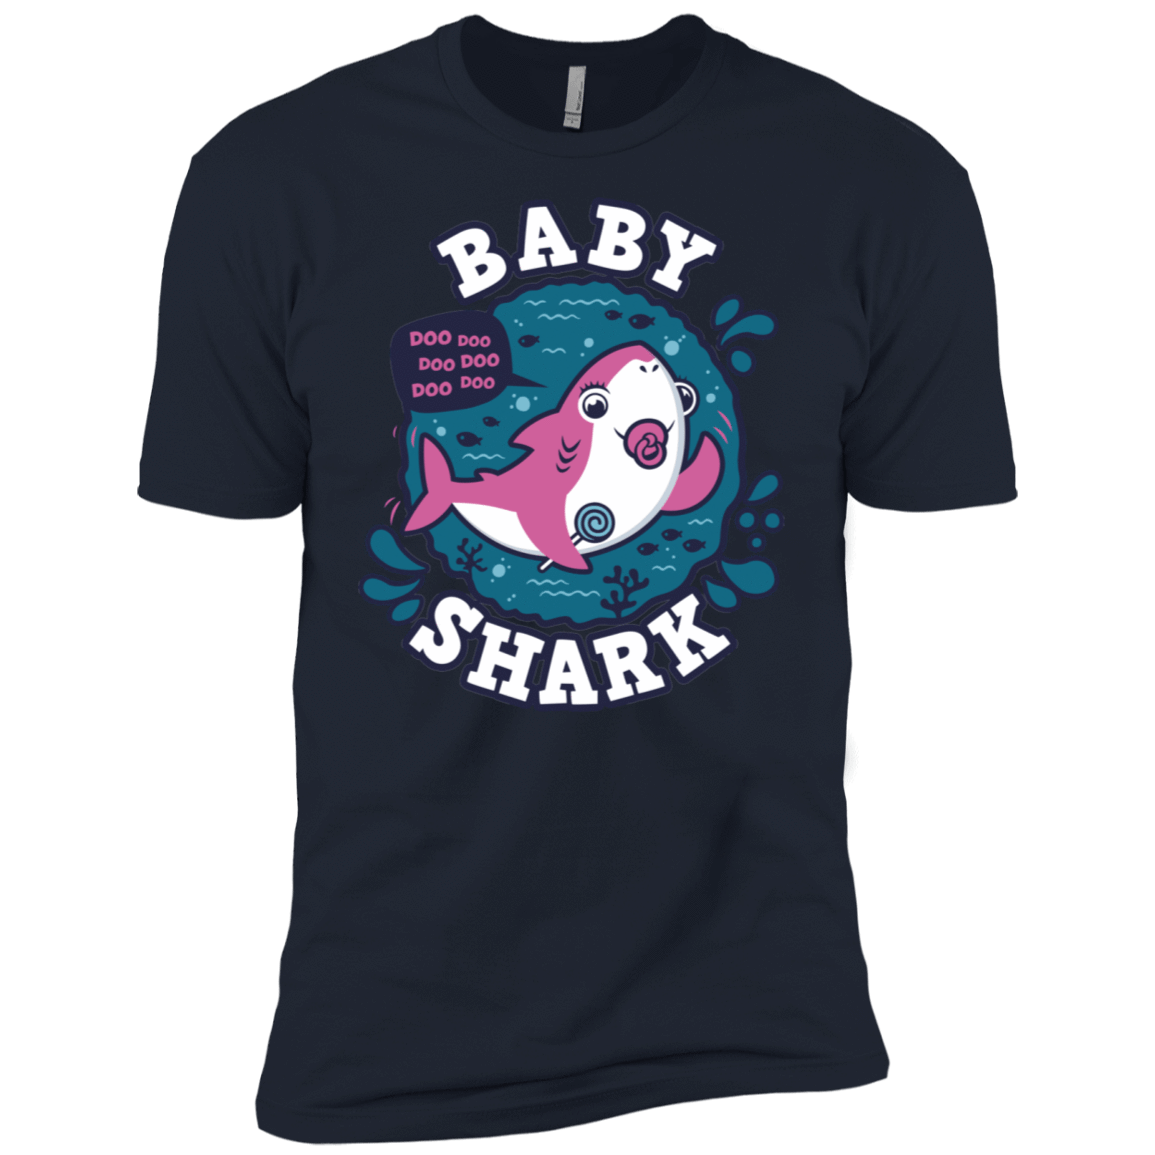 T-Shirts Midnight Navy / X-Small Shark Family trazo - Baby Girl chupete Men's Premium T-Shirt